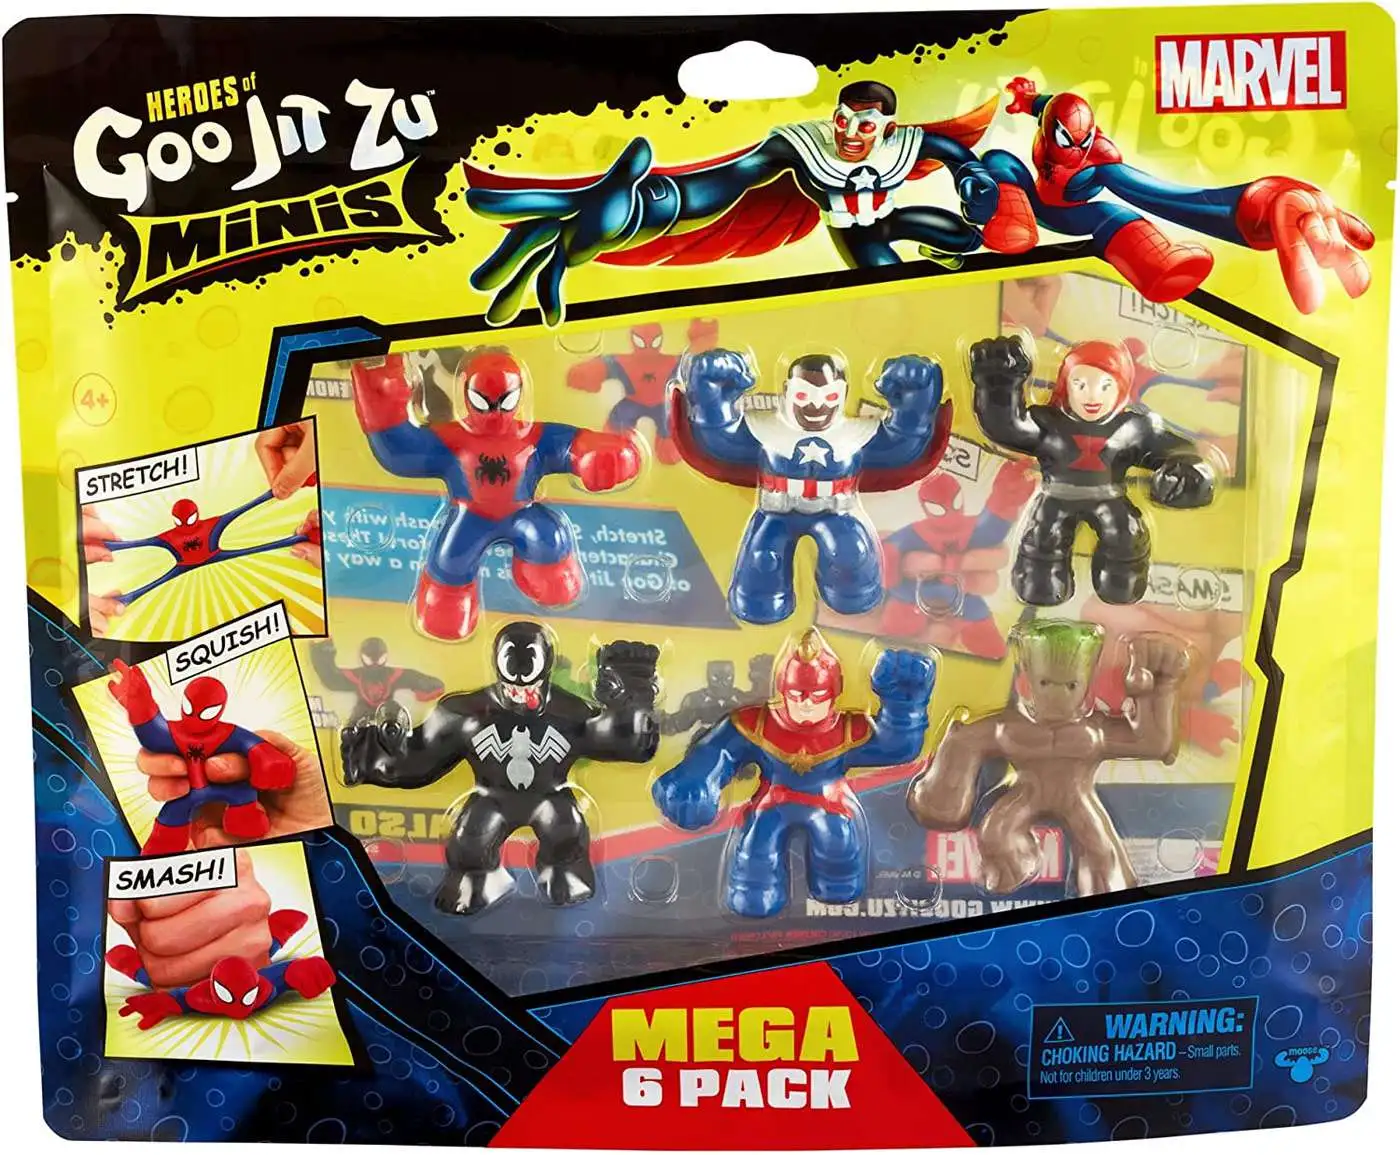 Groot Heroes of Goo Jit Zu Marvel Hero Pack Super Stretchy Action Figures 